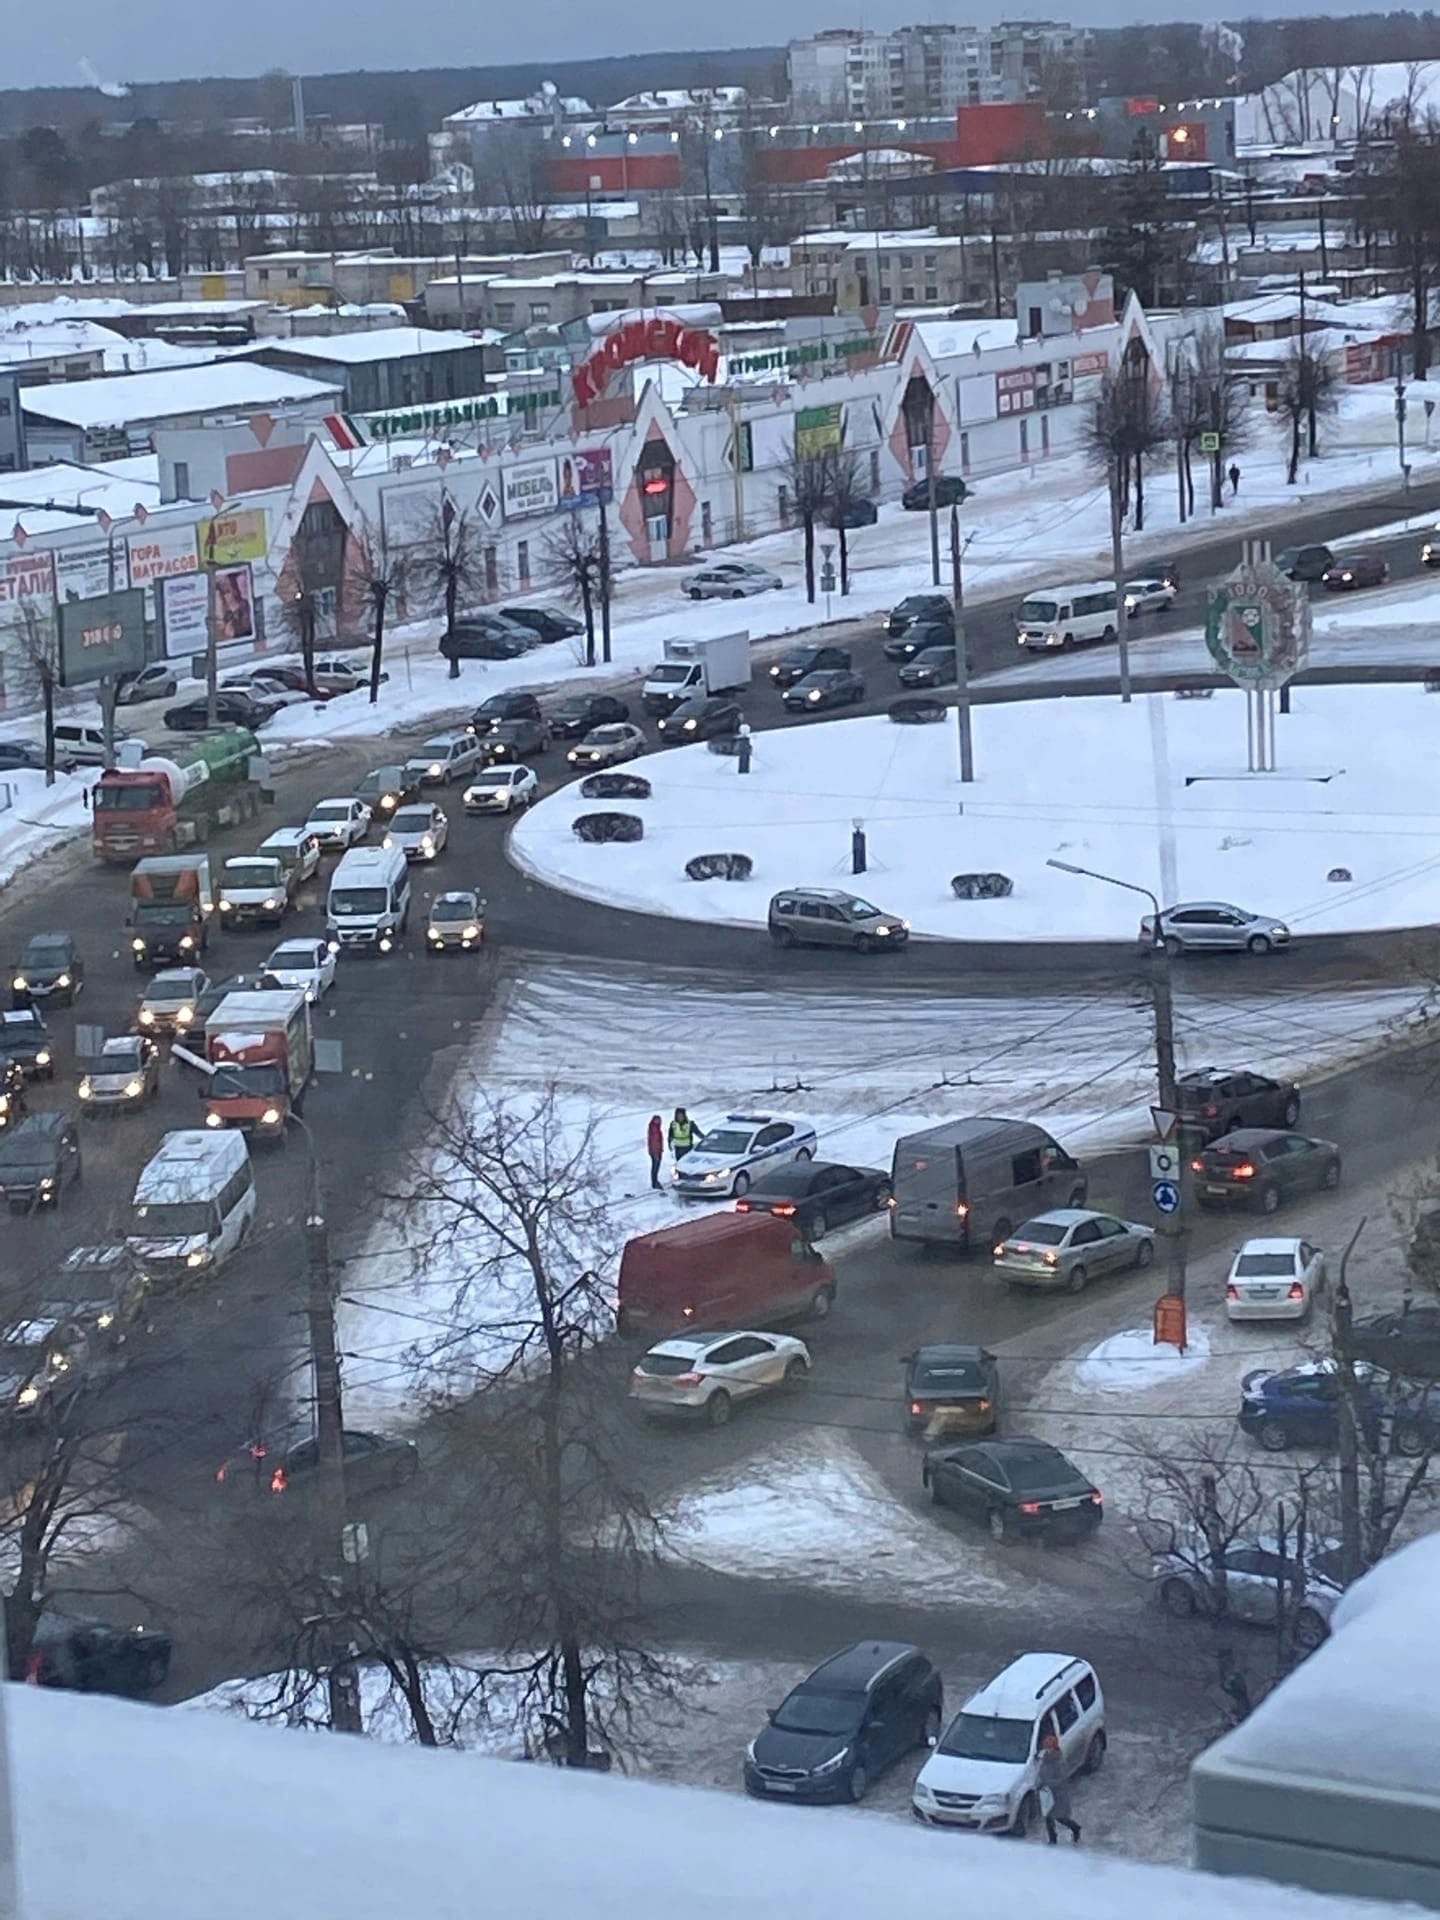 Брянск стал лидером на географической карте «тоталей»: в городе чаще разбивают авто полностью